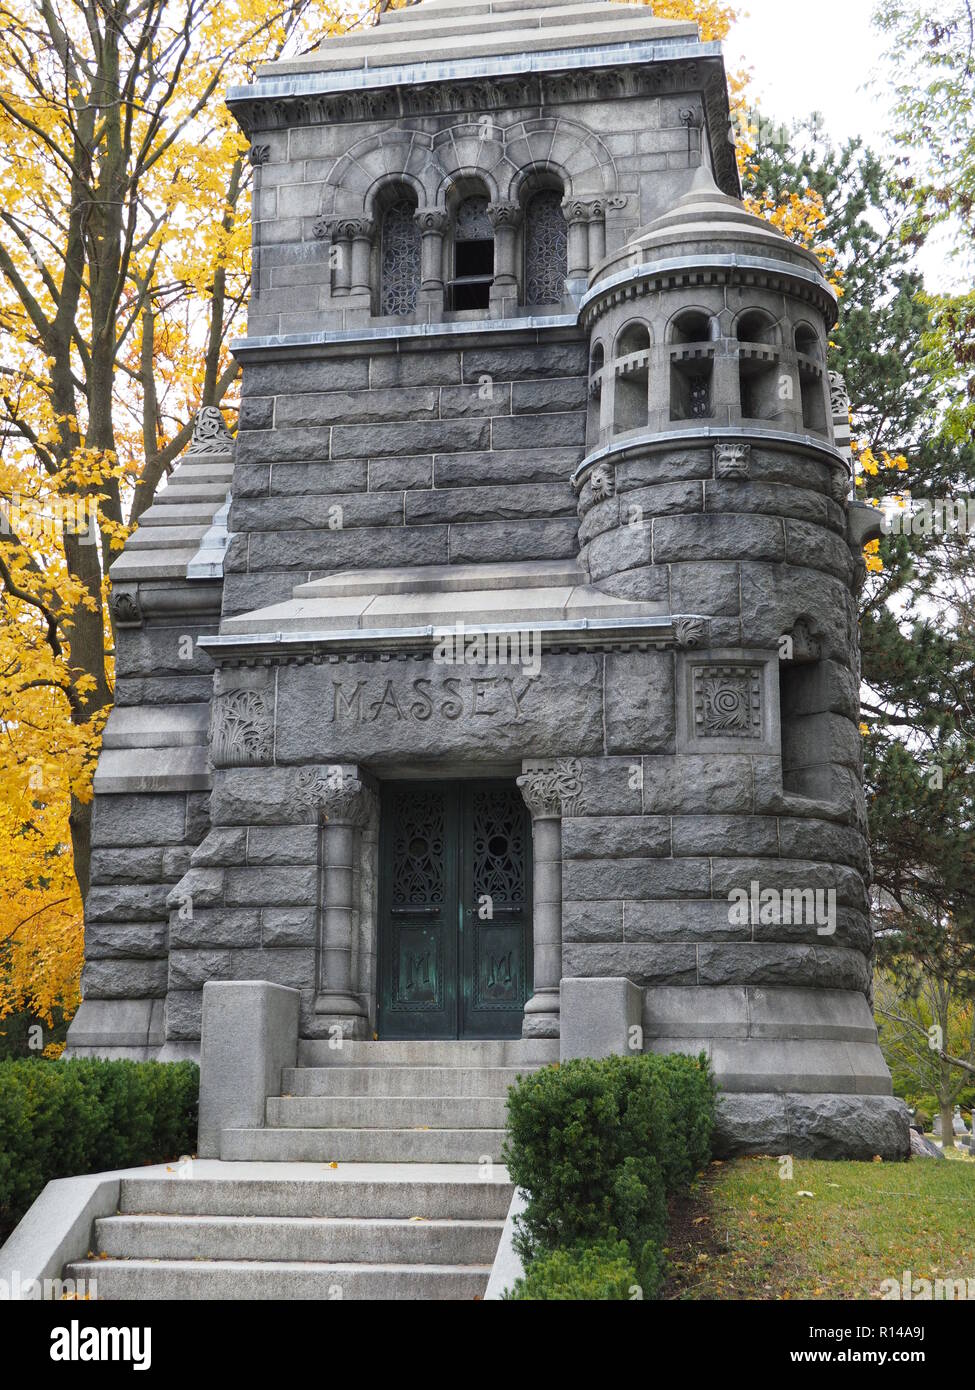 Mausolée de la famille Massey, cimetière Mount Pleasant à Toronto Banque D'Images